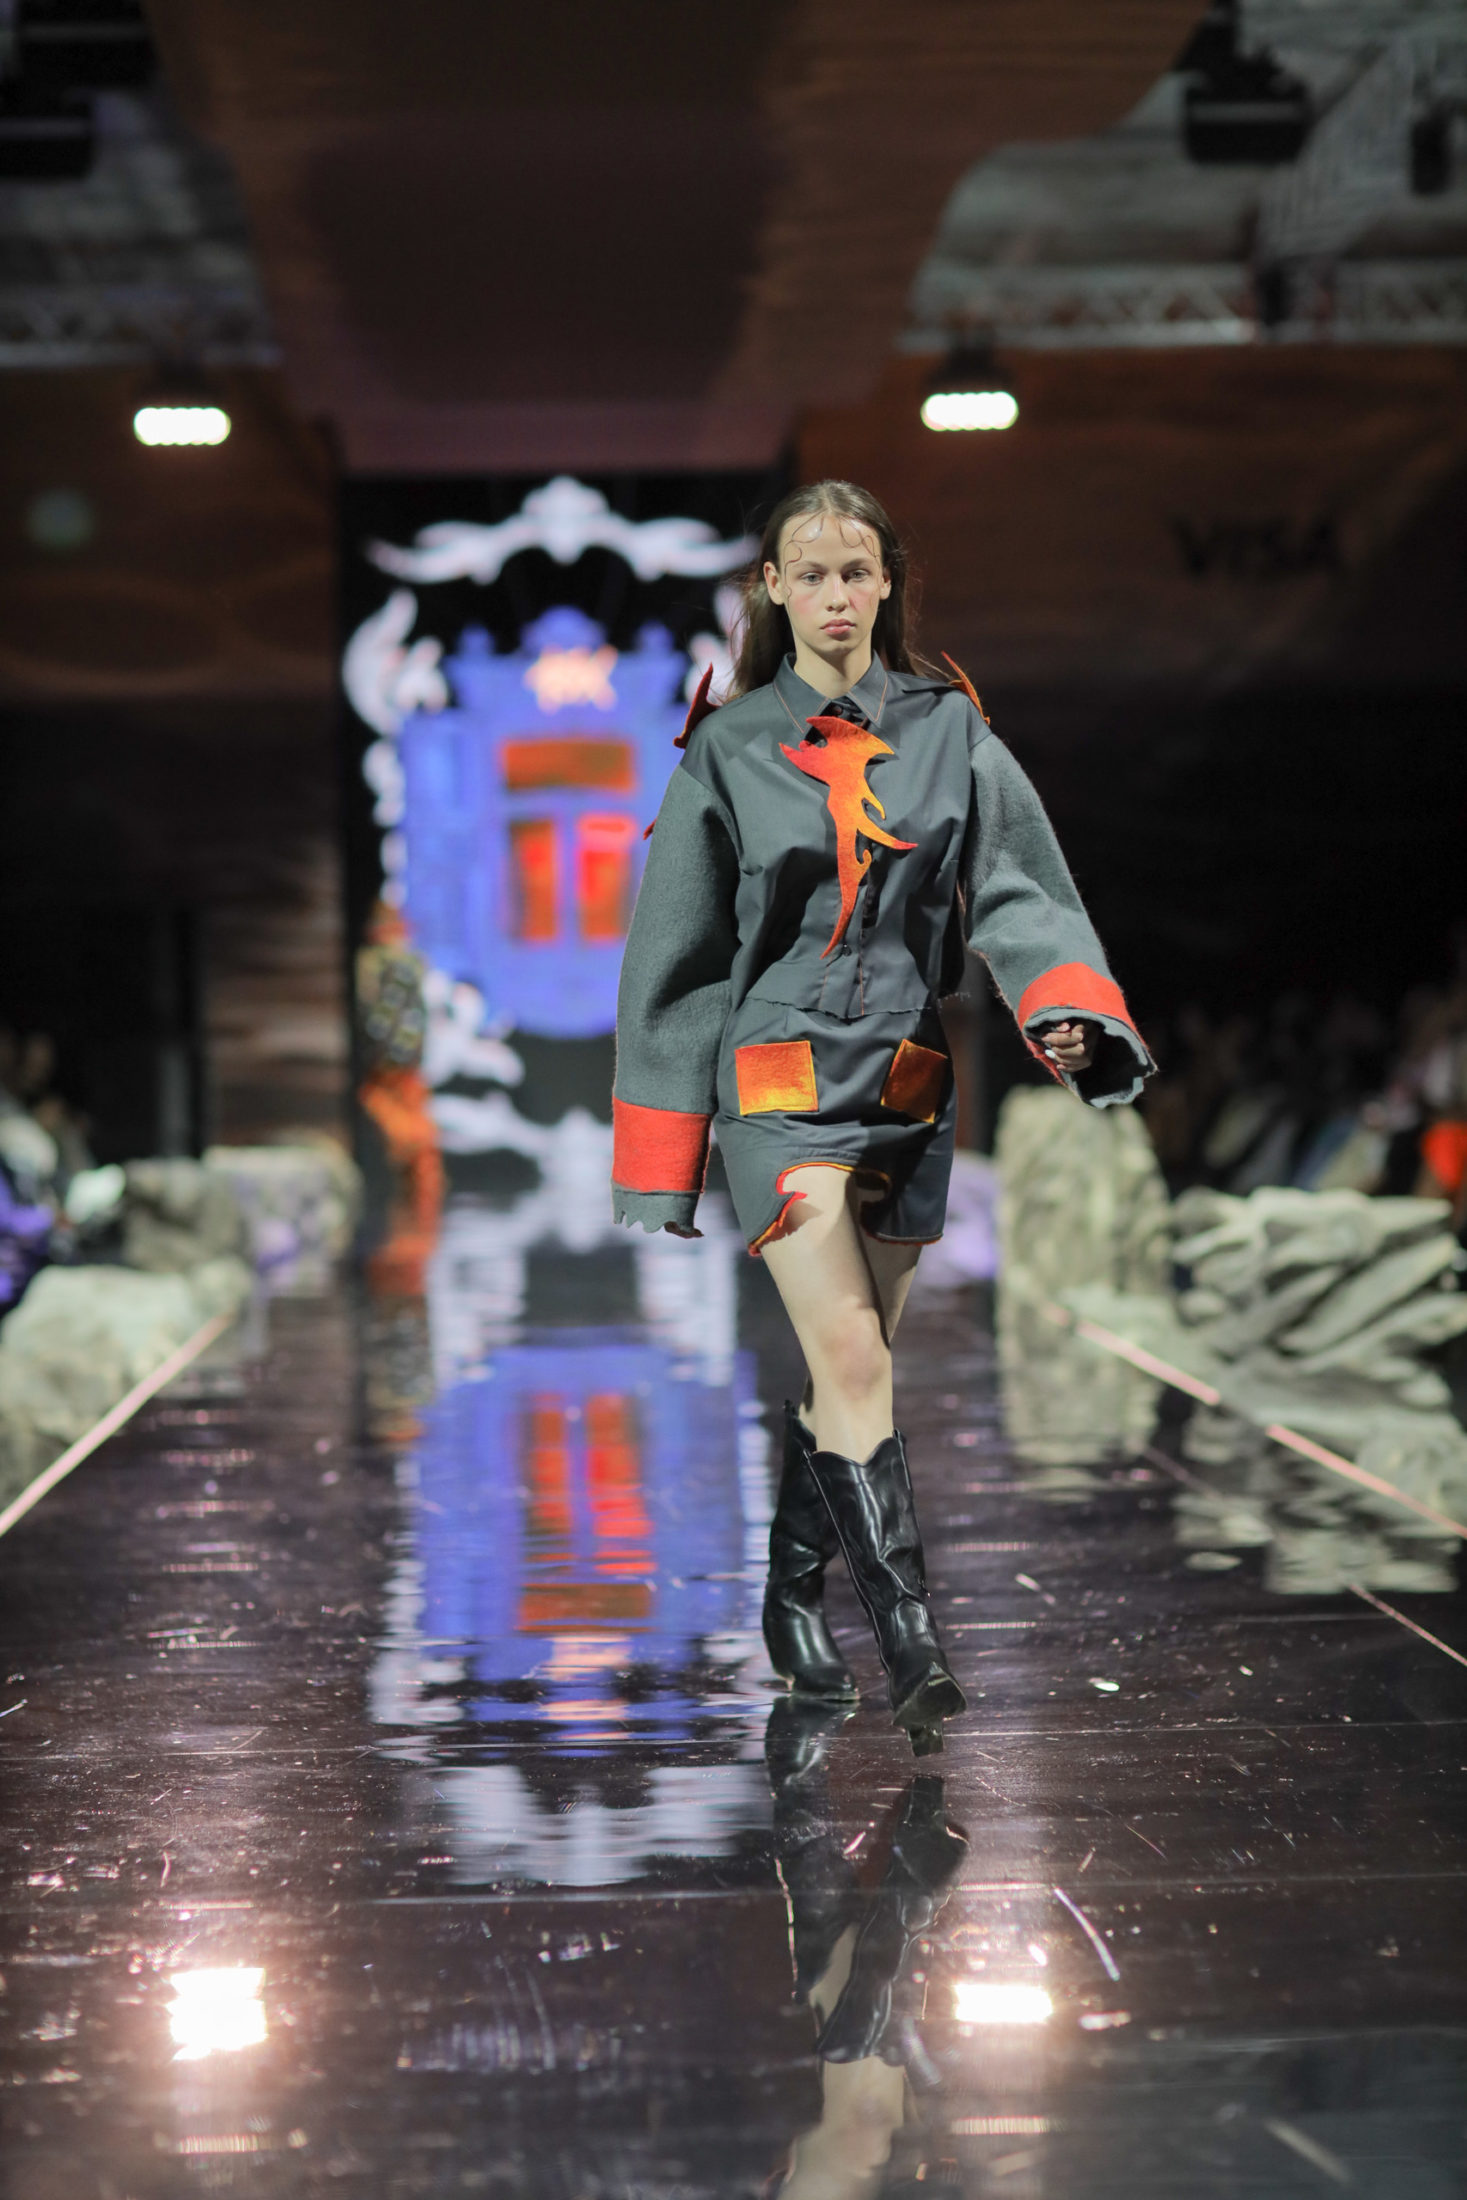 Языки пламени, лиловый и ретрошик: второй день Visa Fashion Week Almaty